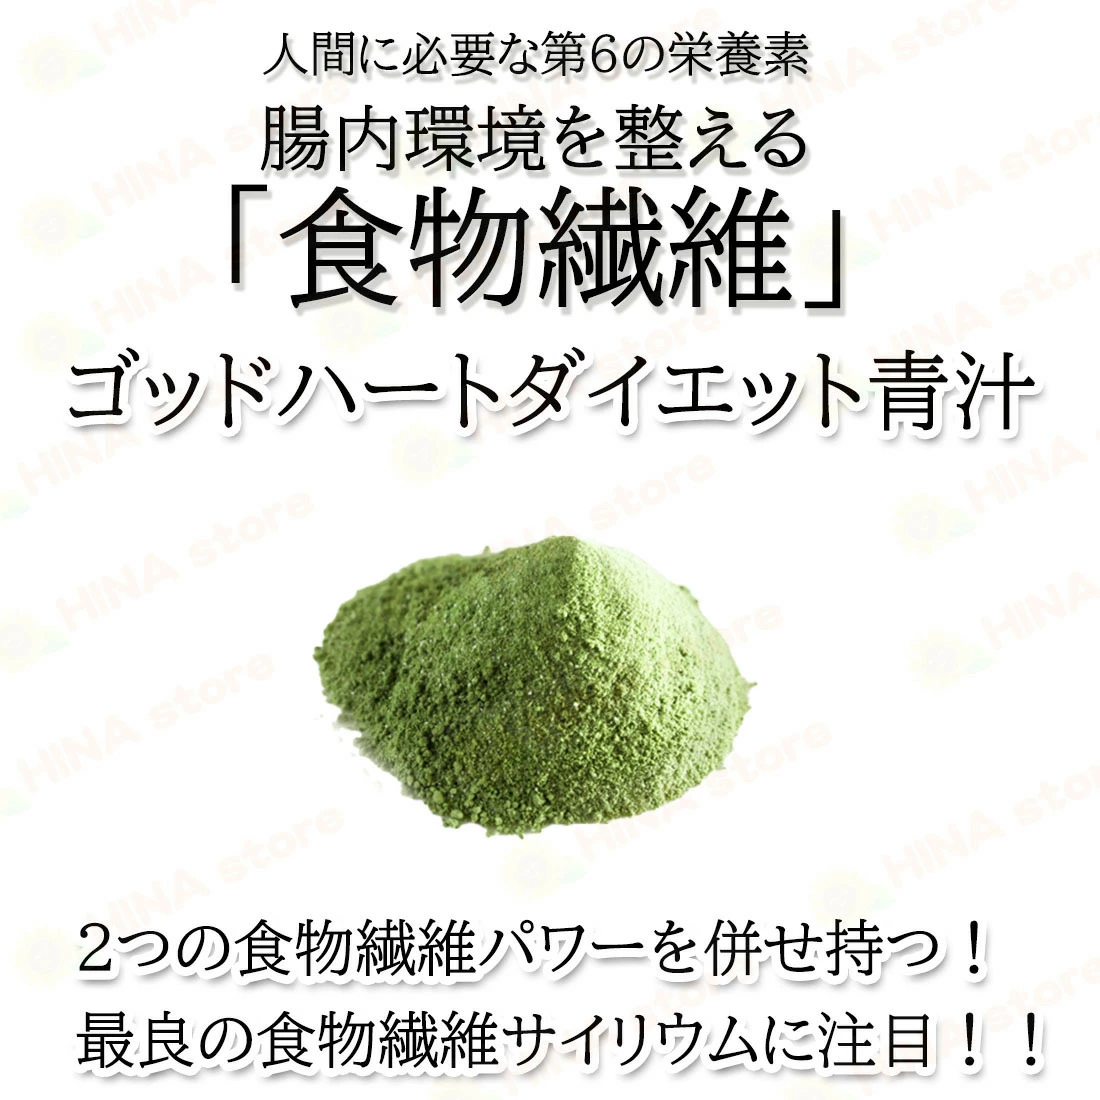 【超激安通販】銀座まるかんゴットハートダイエット青汁 3箱 青汁/ケール加工食品